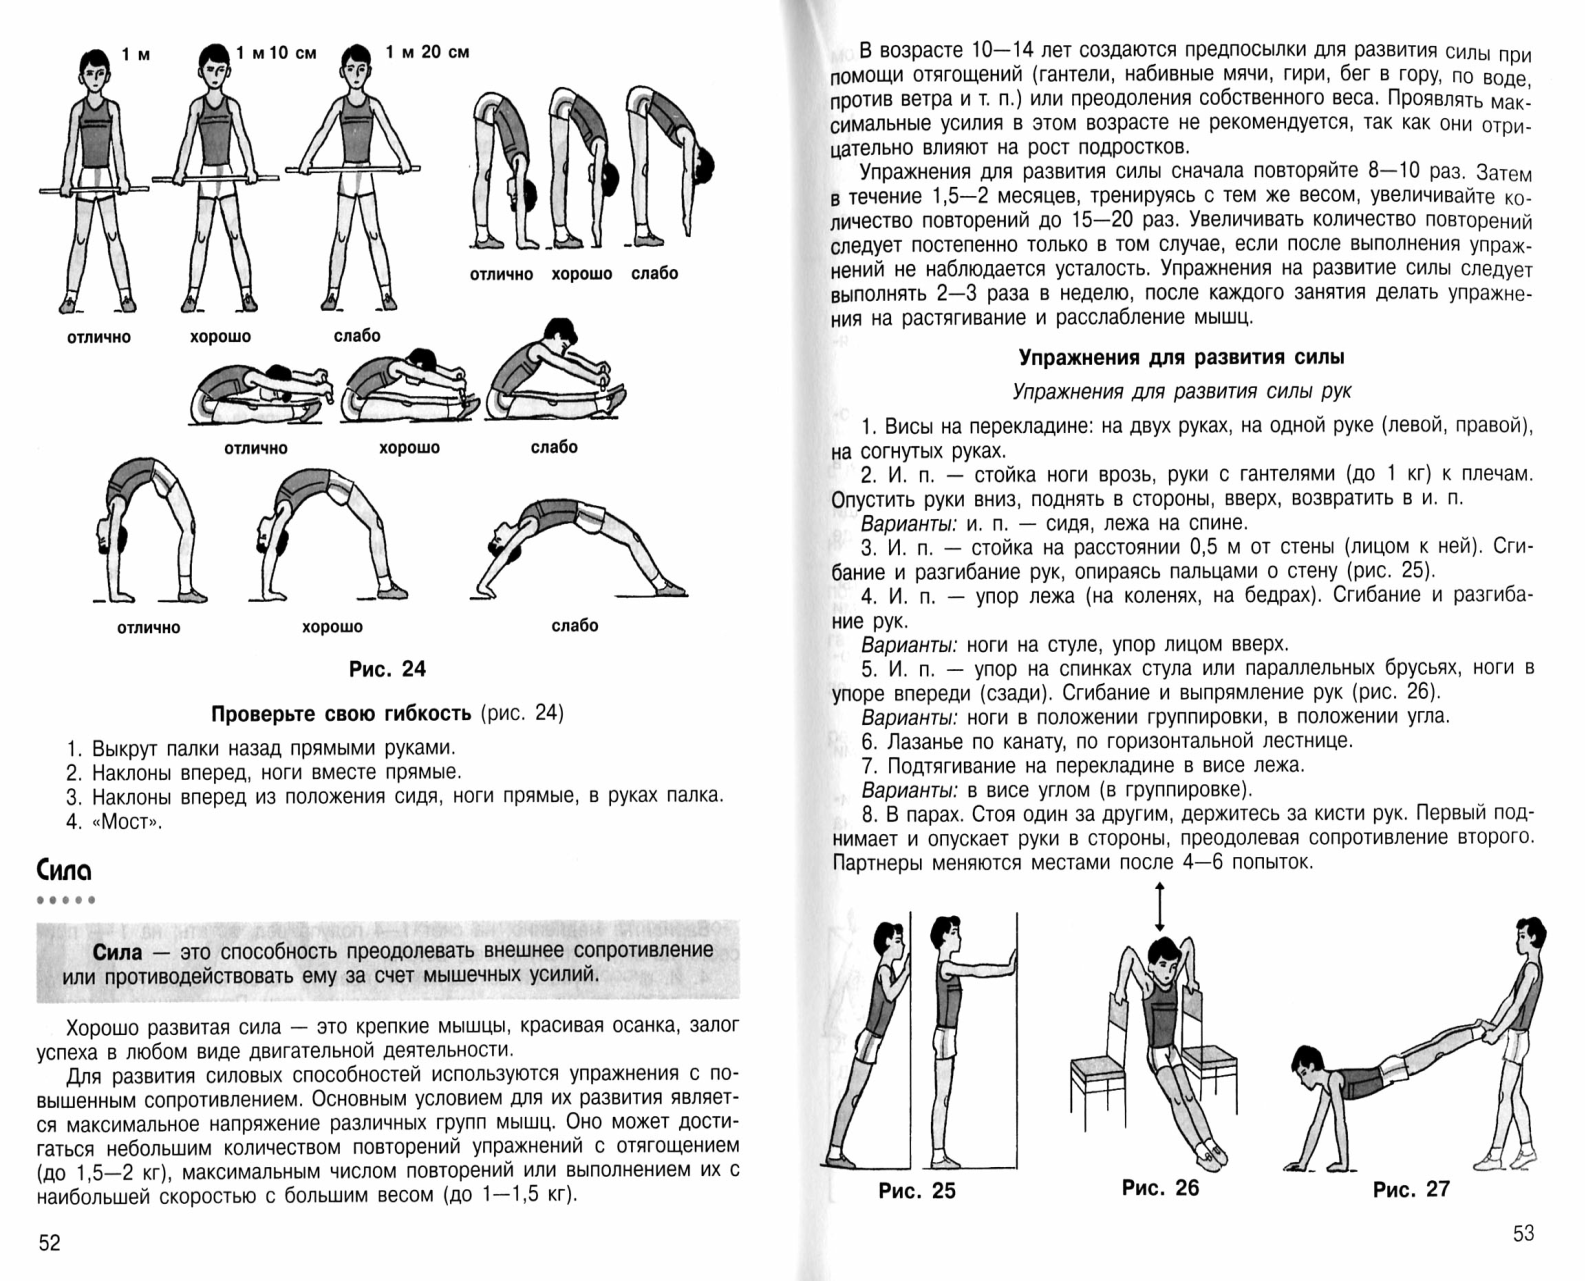 Статья Особенности физического воспитания учащихся начальных классов